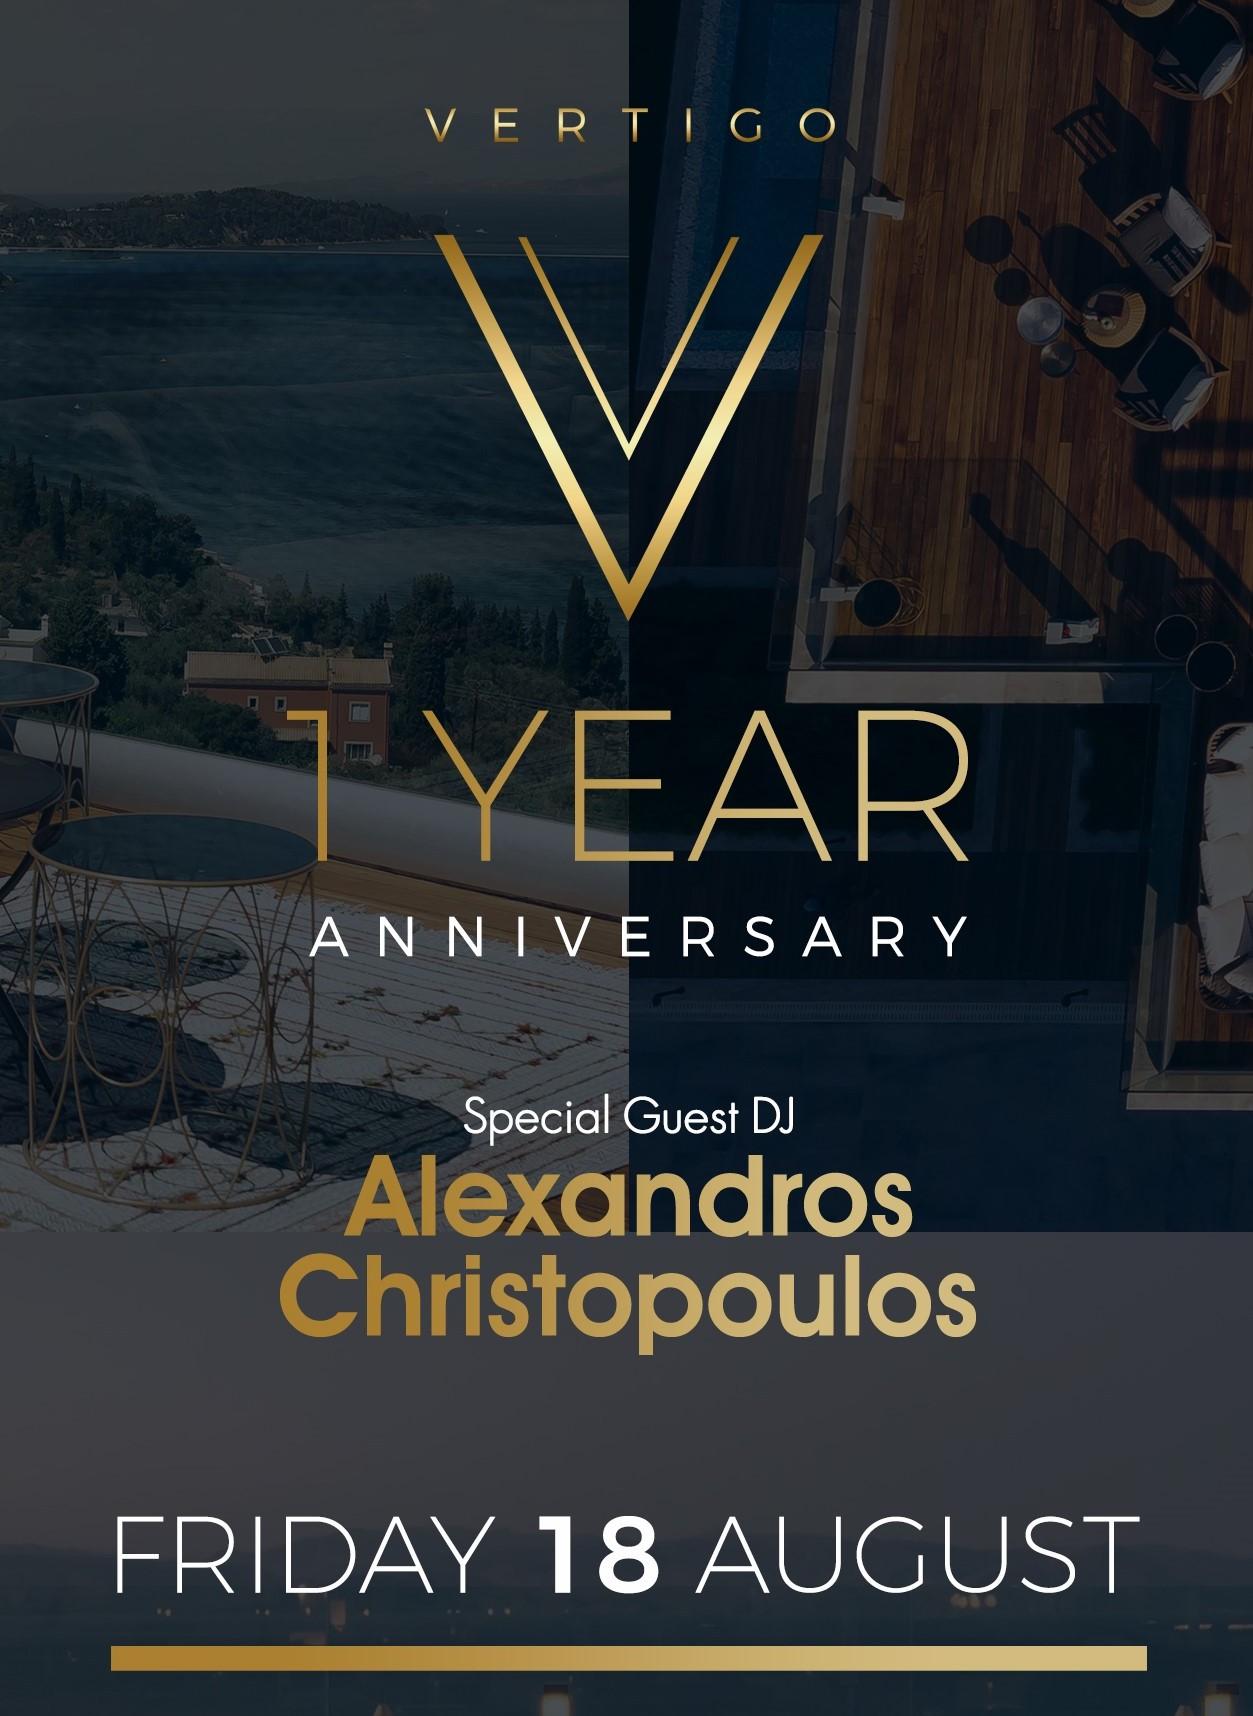 alexandros christopoulos at vertigo sky bar corfu